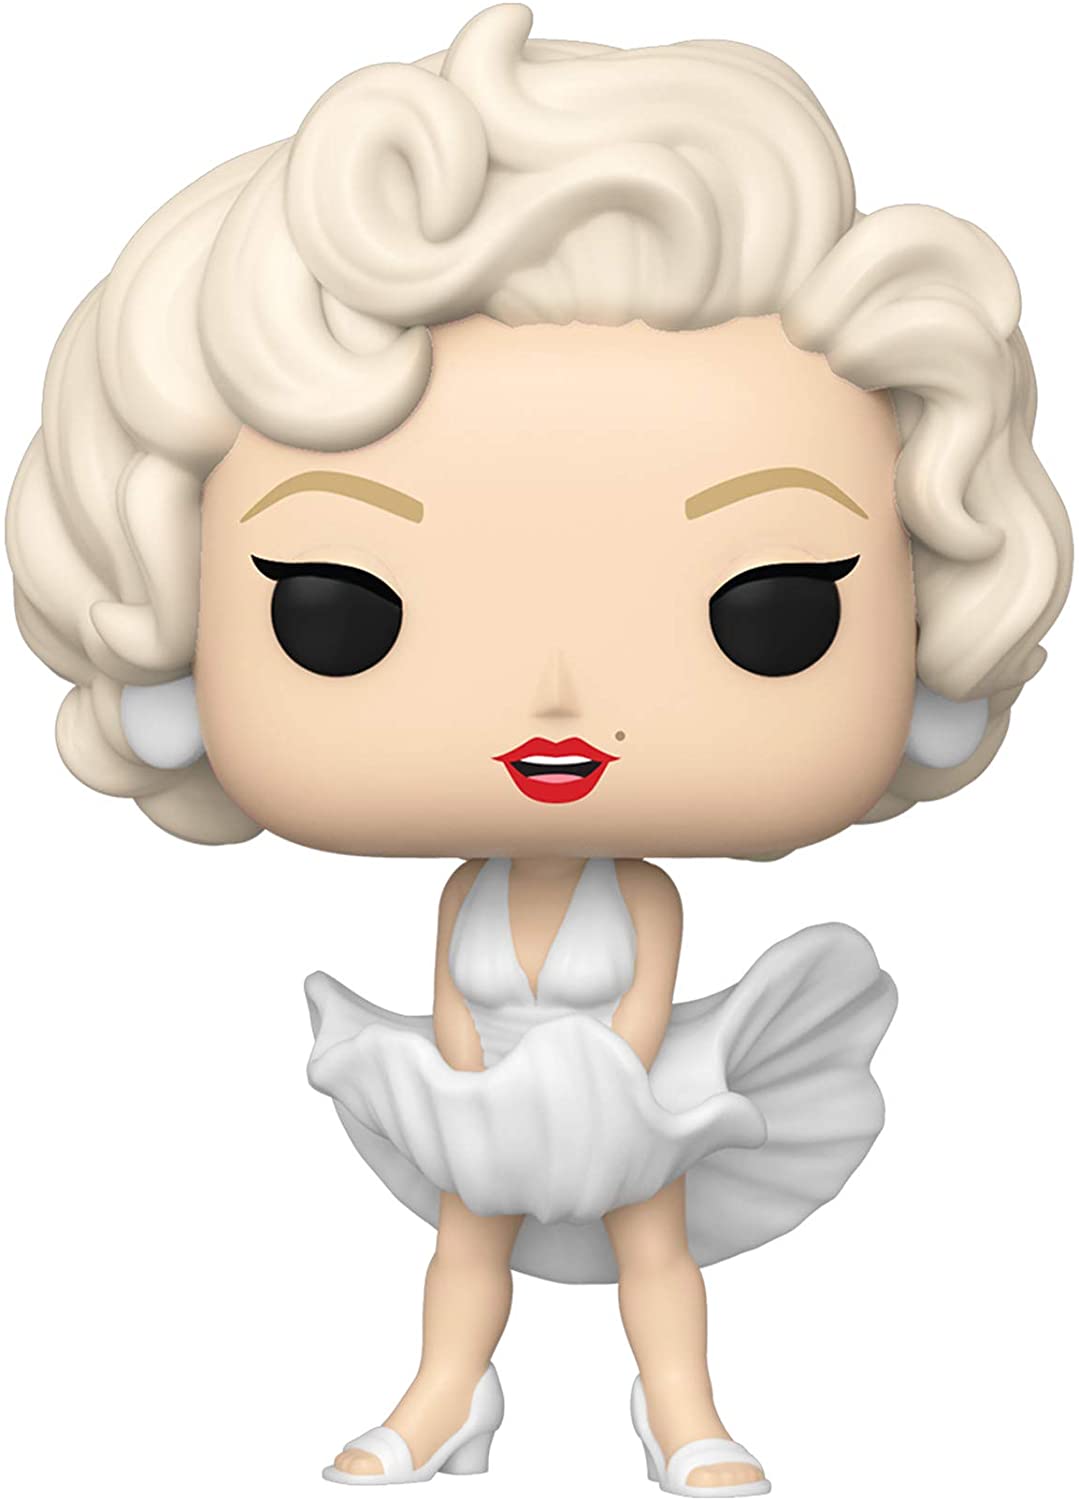 Marilyn Monroe Boneco Pop Funko Marilyn Monroe